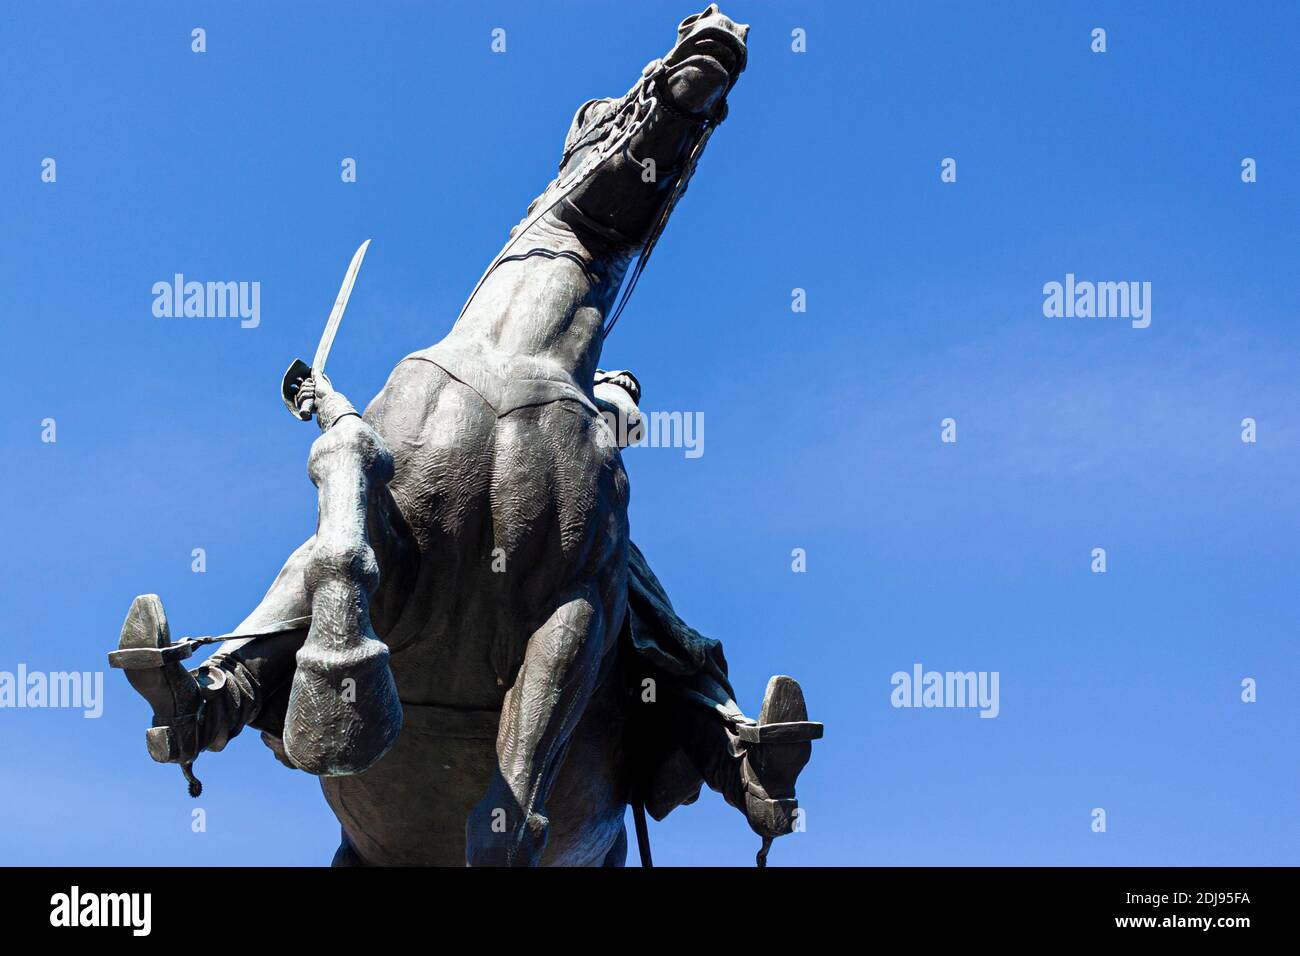 Washington DC, USA 11-29-2020: Immagine a basso angolo di una statua equestre in bronzo che presenta un cavallo di guerra che si alleva con un soldato con la spada in mano. Esso Foto Stock